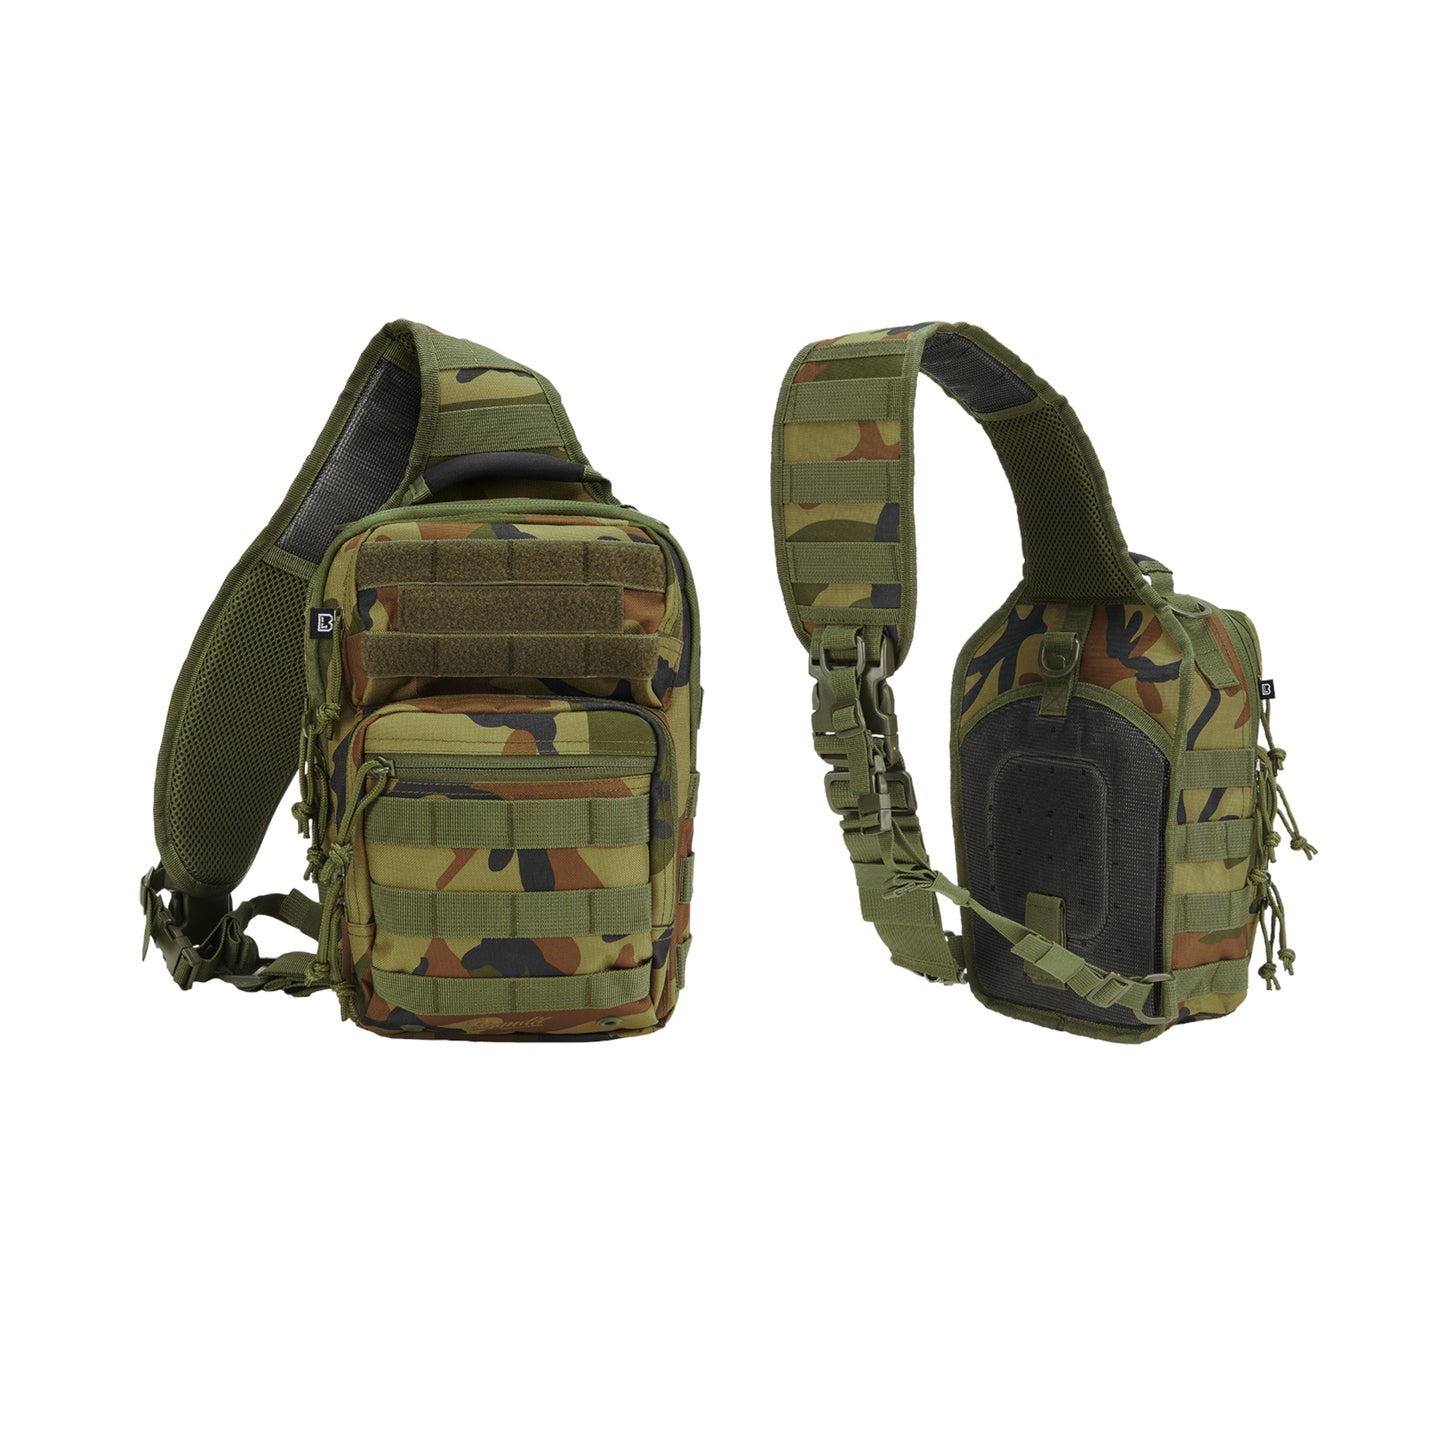 Survival Kit Premium - Quick Bug out Bag